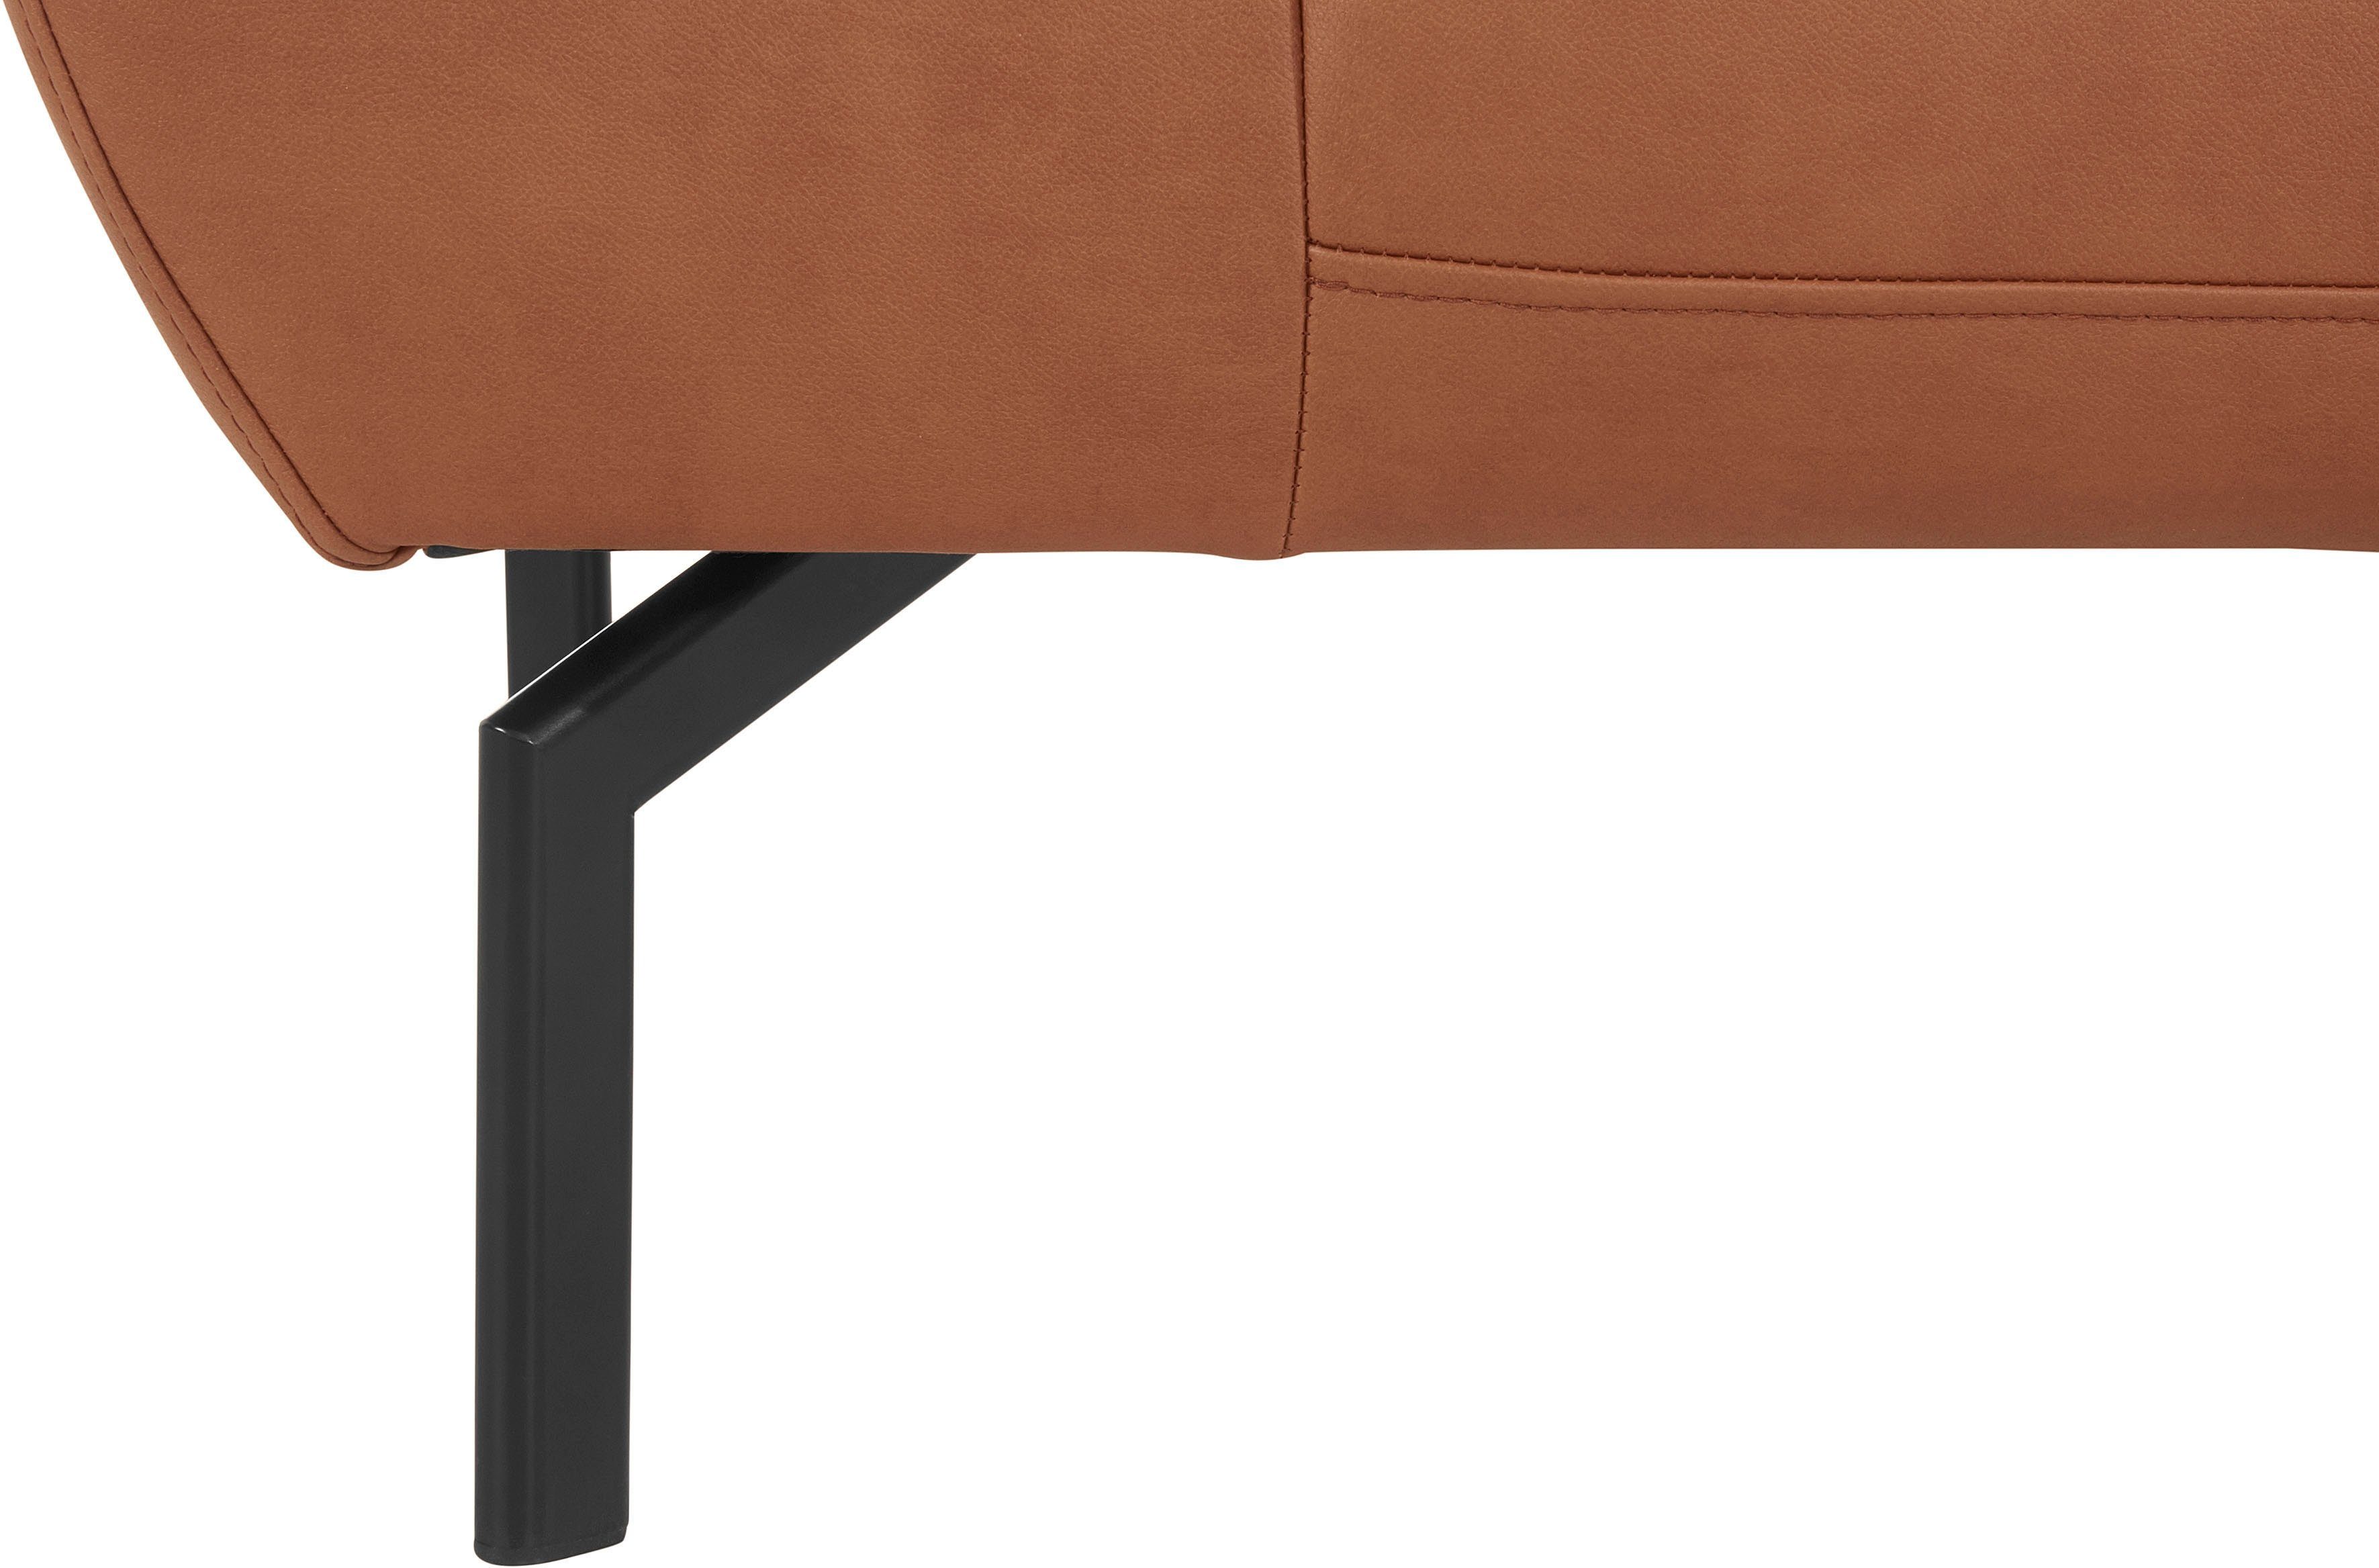 Places of Luxus-Microfaser 2-Sitzer Rückenverstellung, mit Luxus, in Lederoptik wahlweise Style Trapino